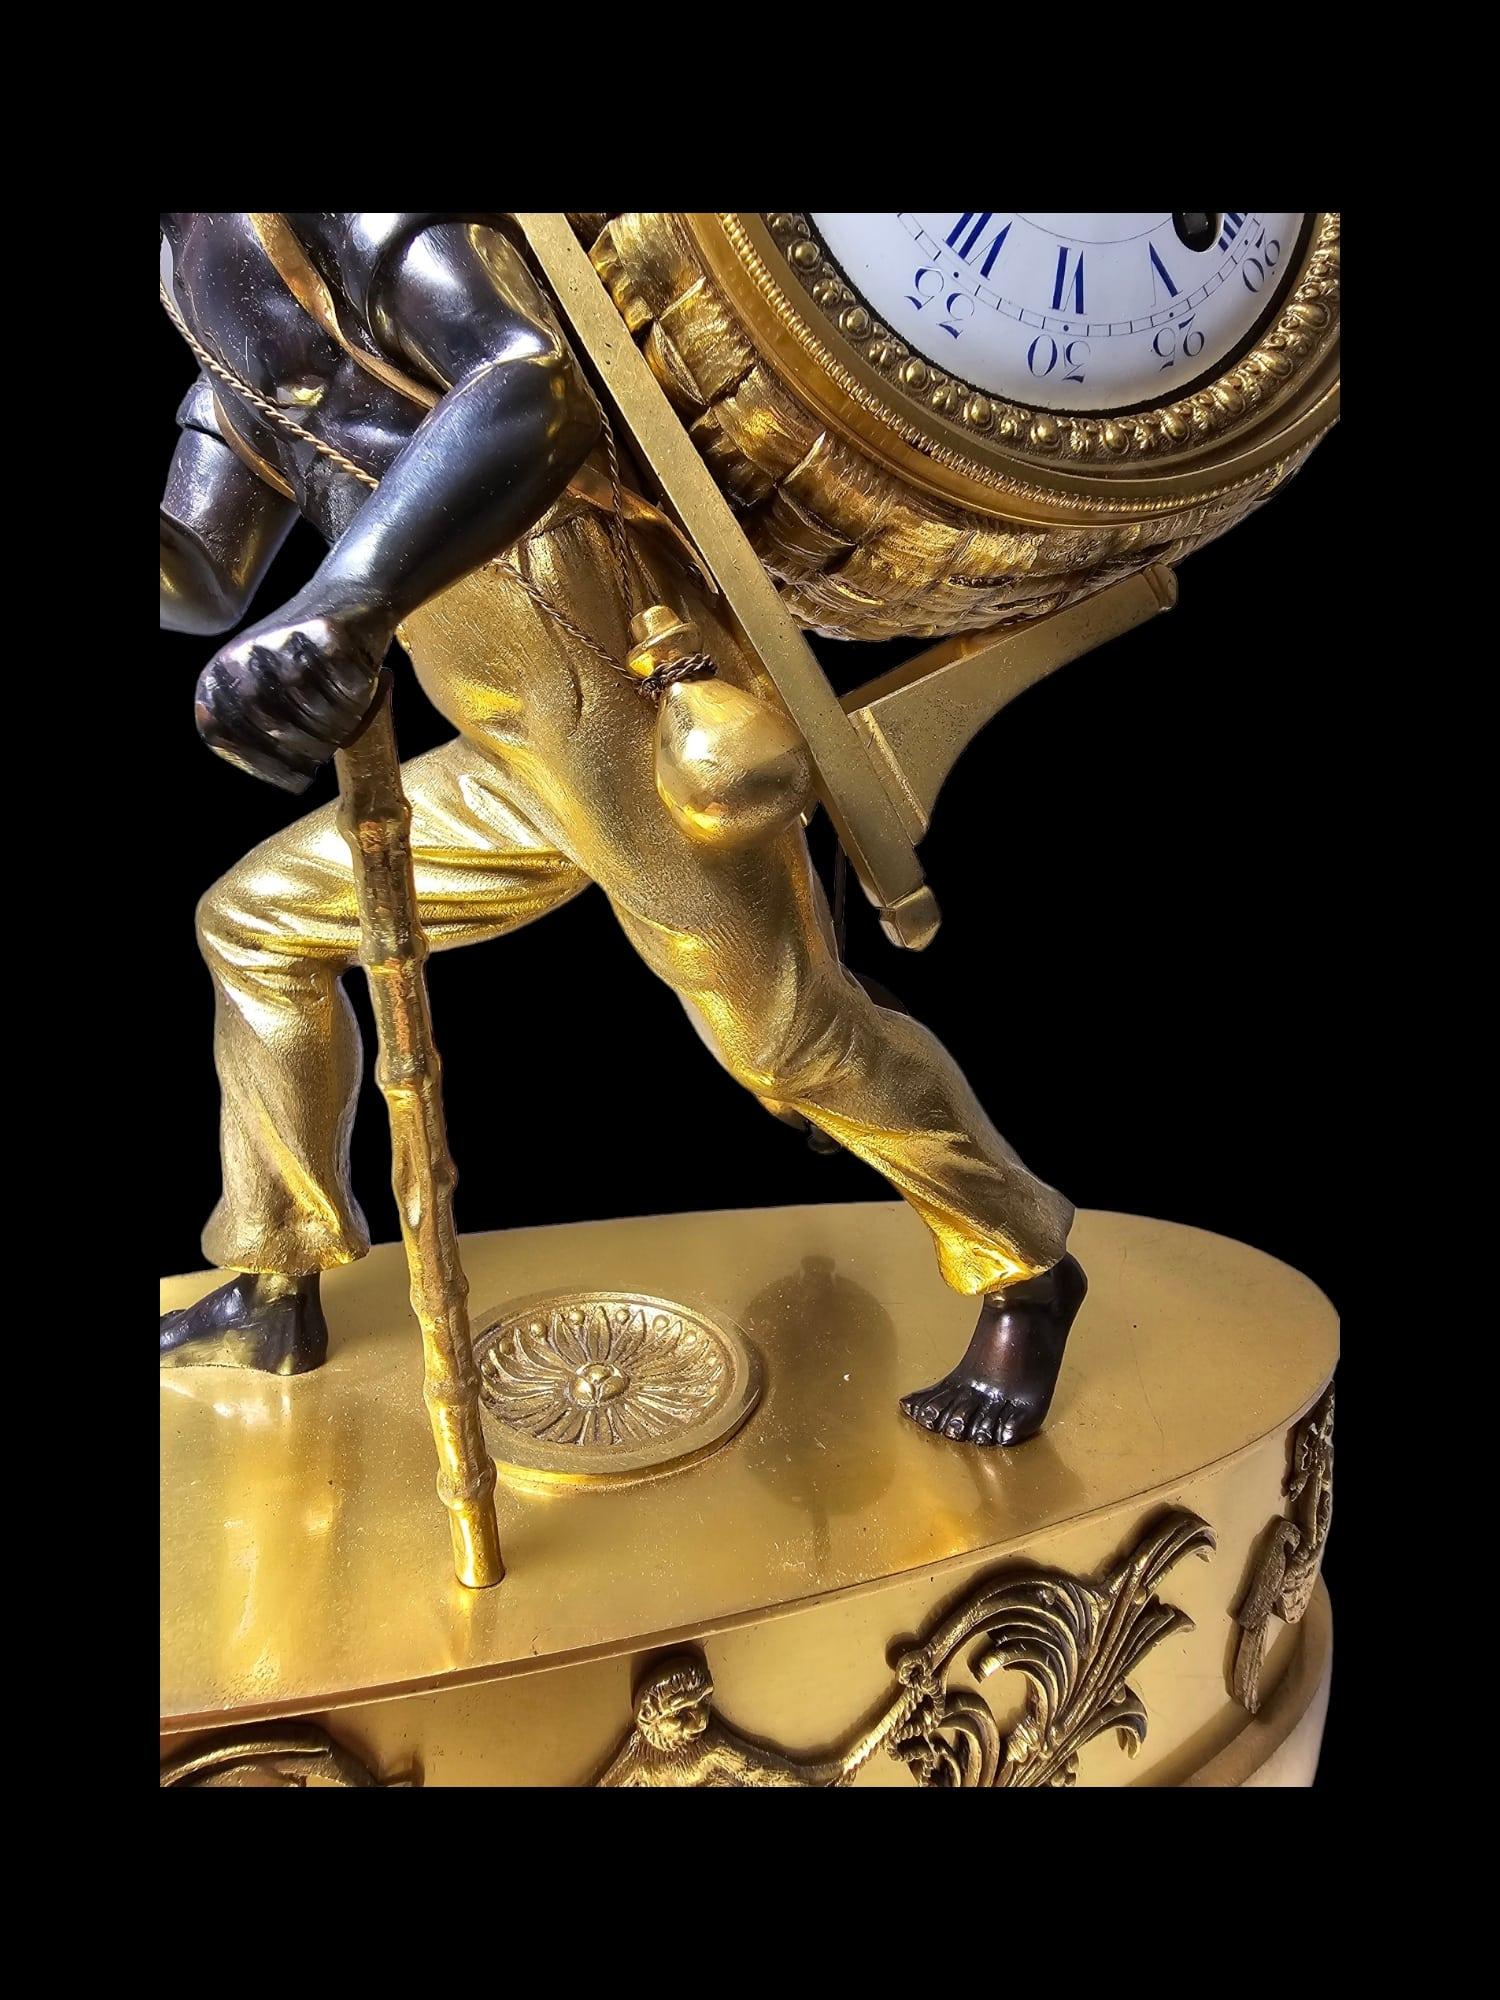 Tiffany&Co Mantel Clock “Le Portefaix” After Design By Jean-André Reiche For Sale 11